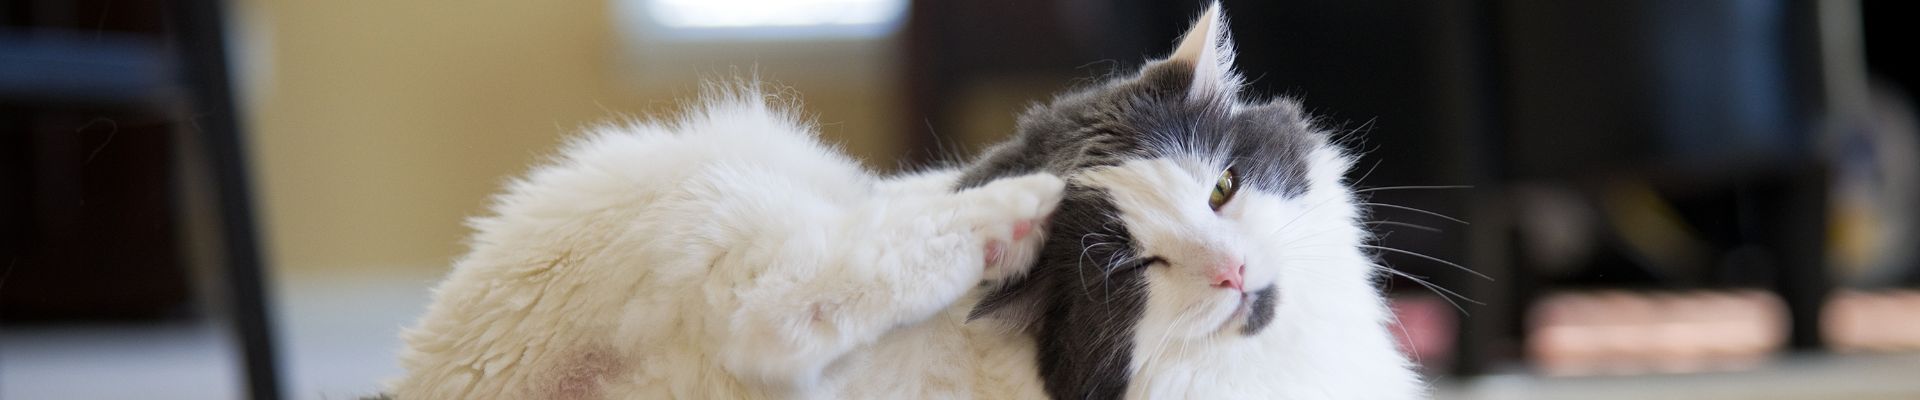 Un gato esponjoso gris y blanco se rasca la oreja